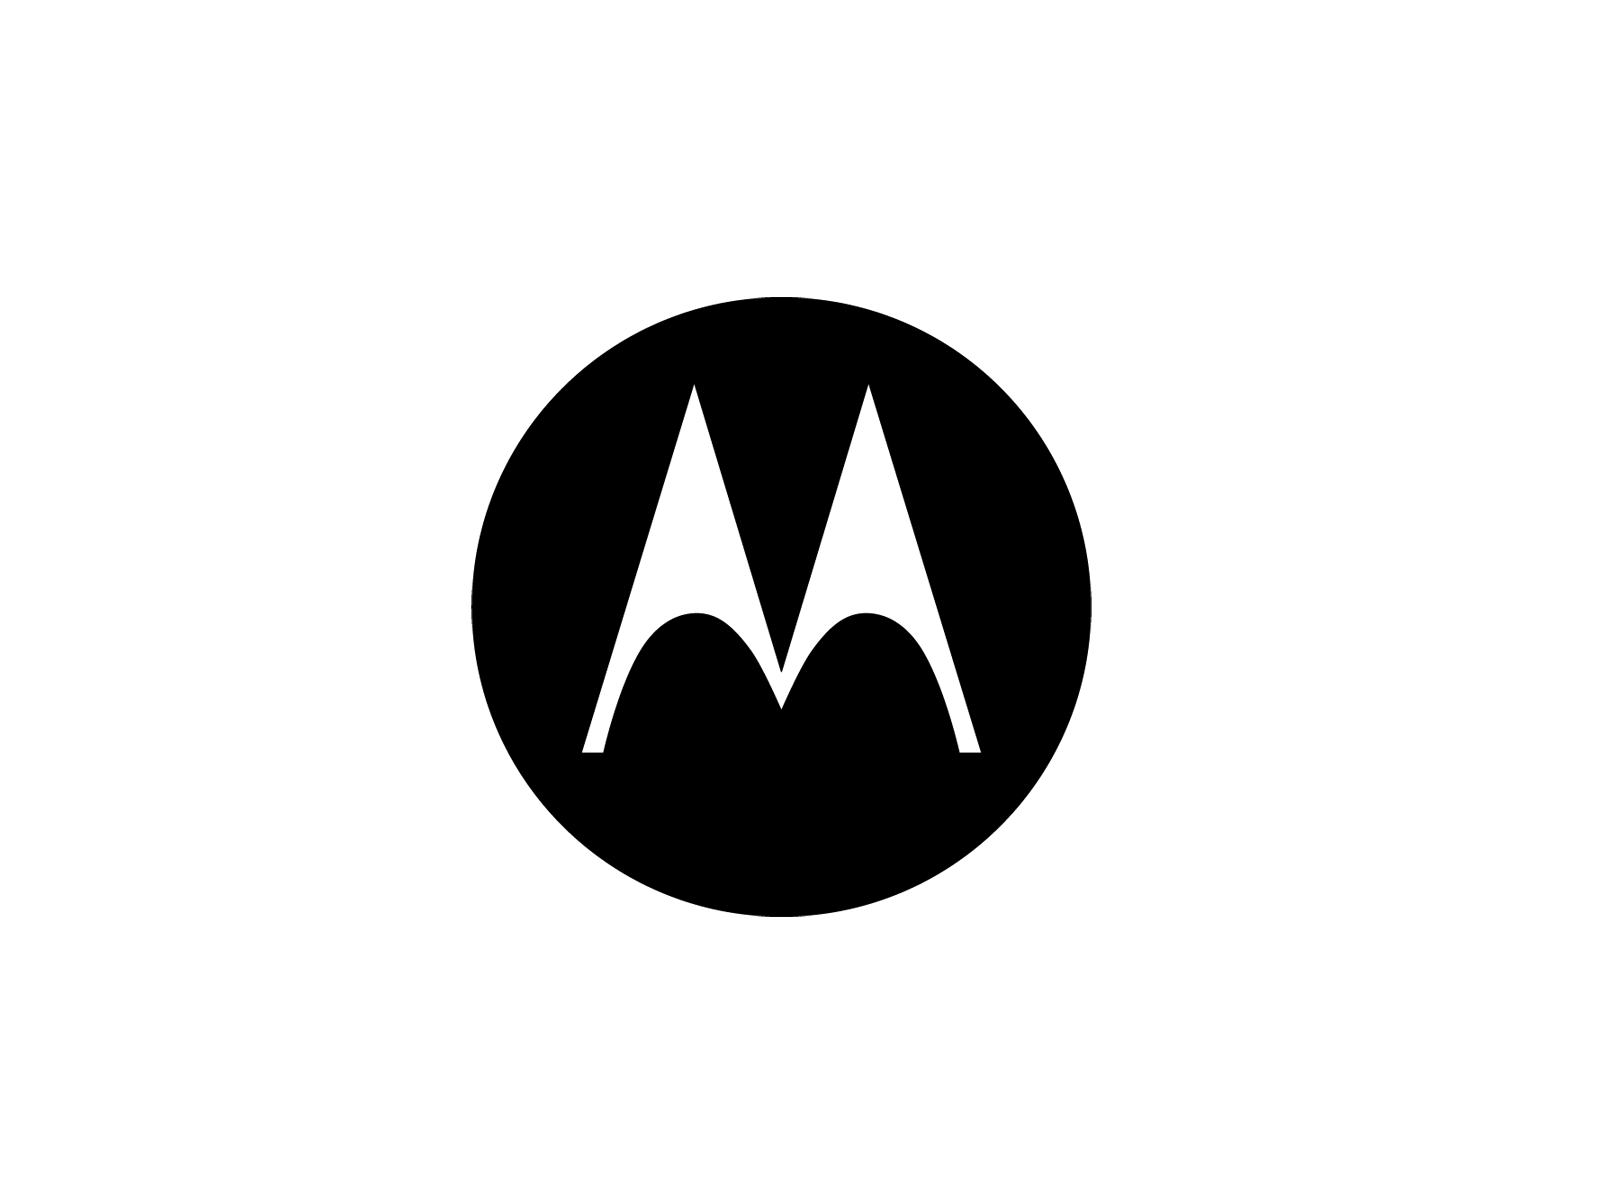 Free download Motorola logo | ? logo, Vector logo, Motorola